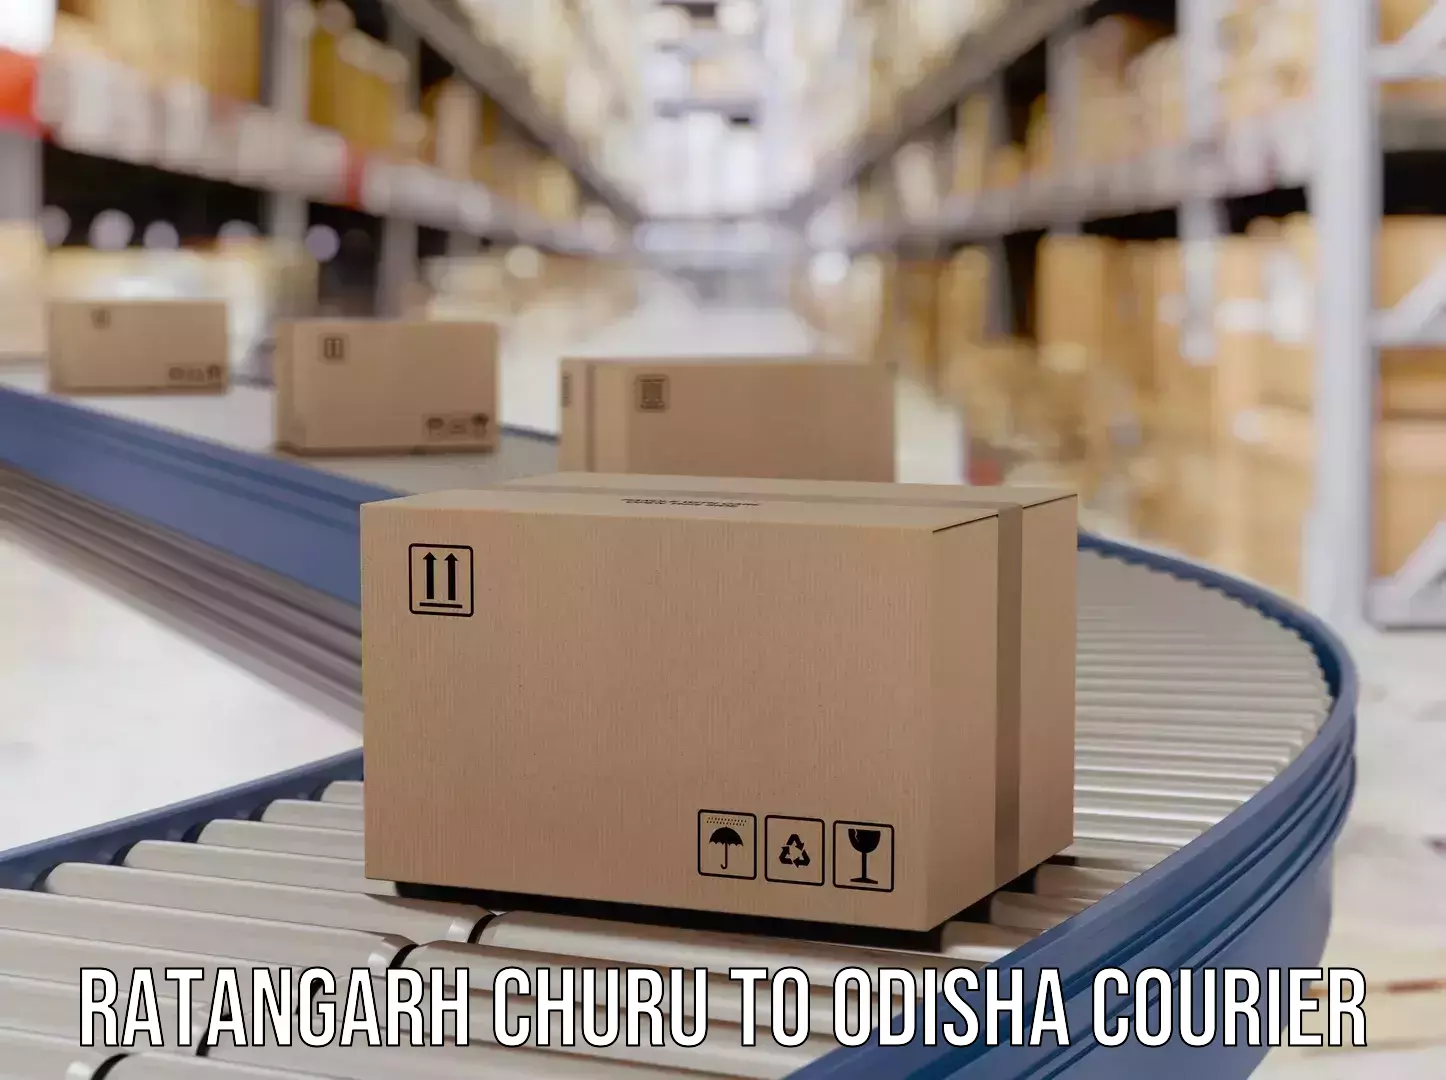 24-hour delivery options Ratangarh Churu to Odisha